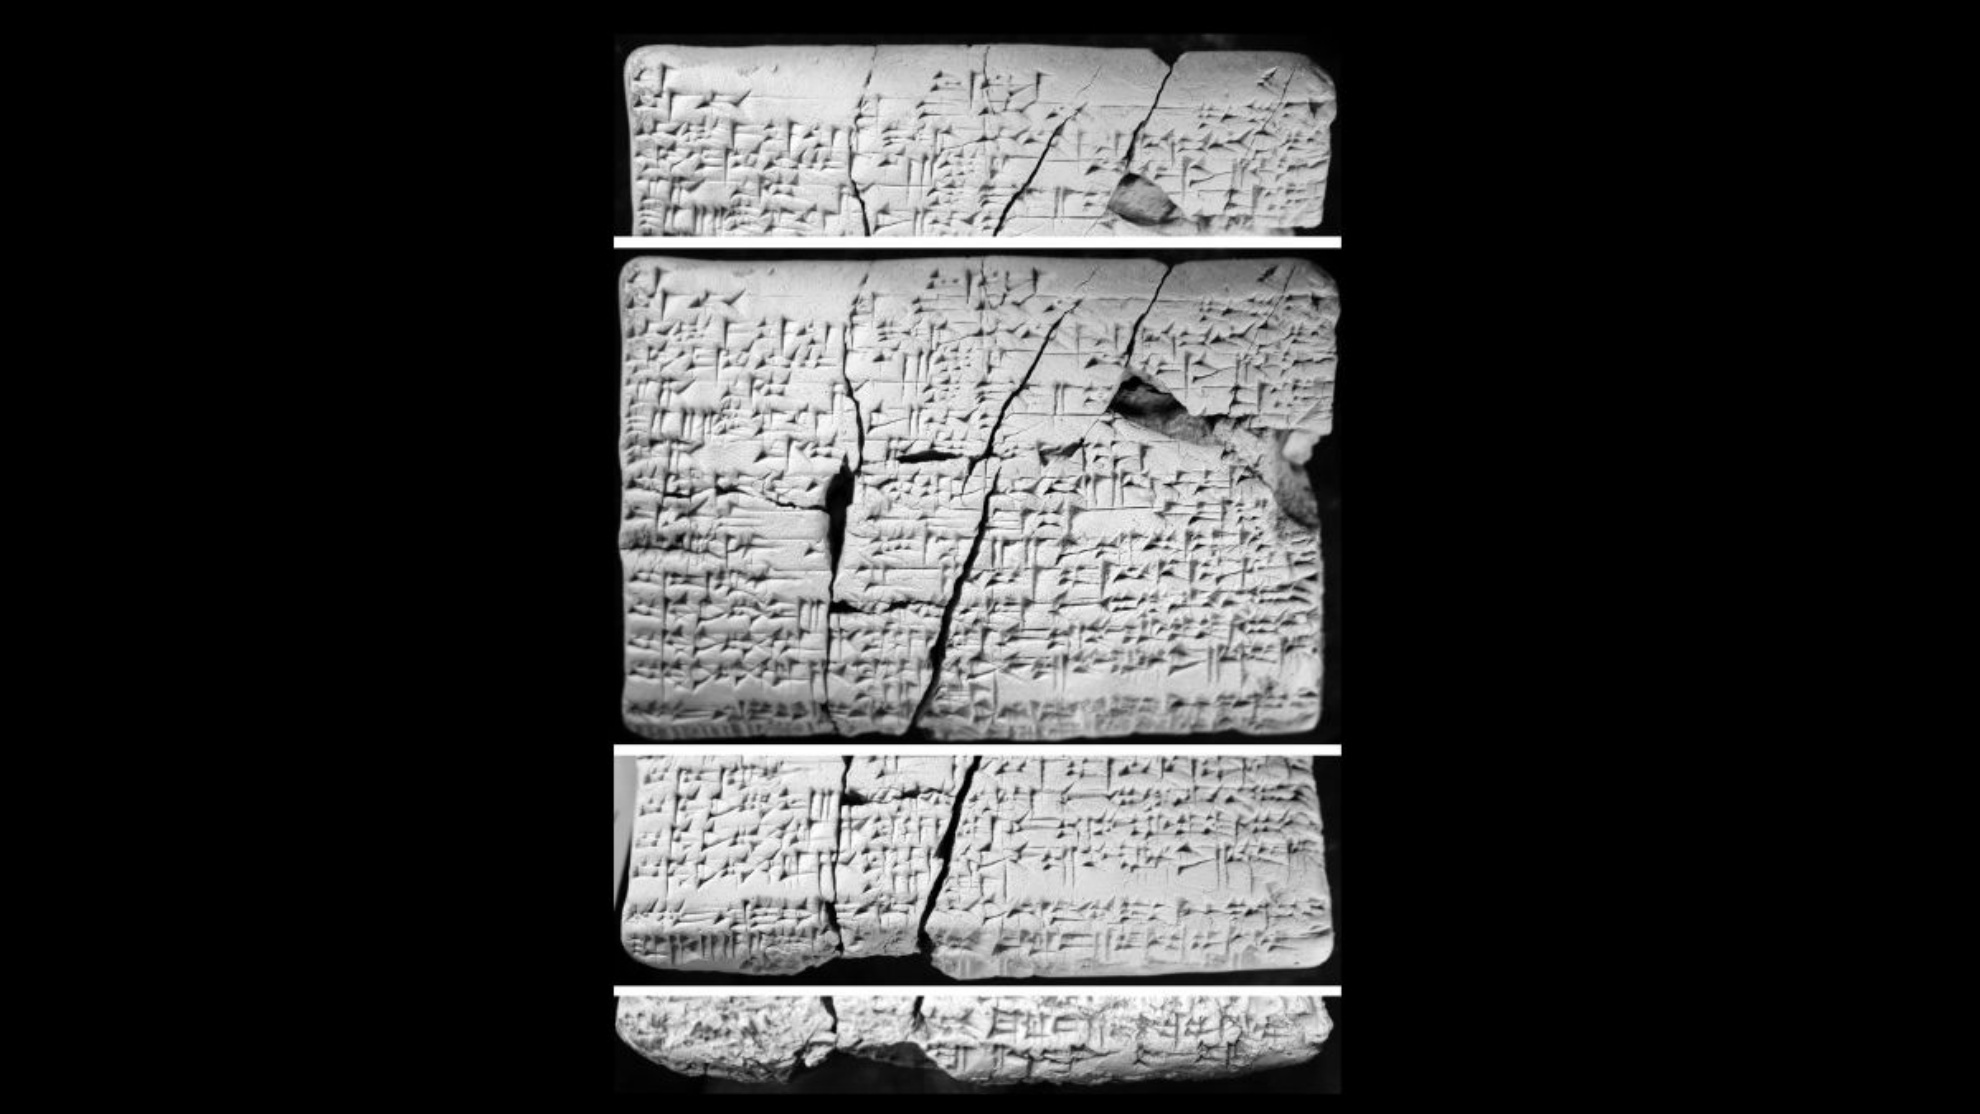 Таблетите биле пронајдени во Ирак пред околу 30 години. Научниците почнаа да ги проучуваат во 2016 година и открија дека содржат детали на акадски за „изгубениот“ аморејски јазик.